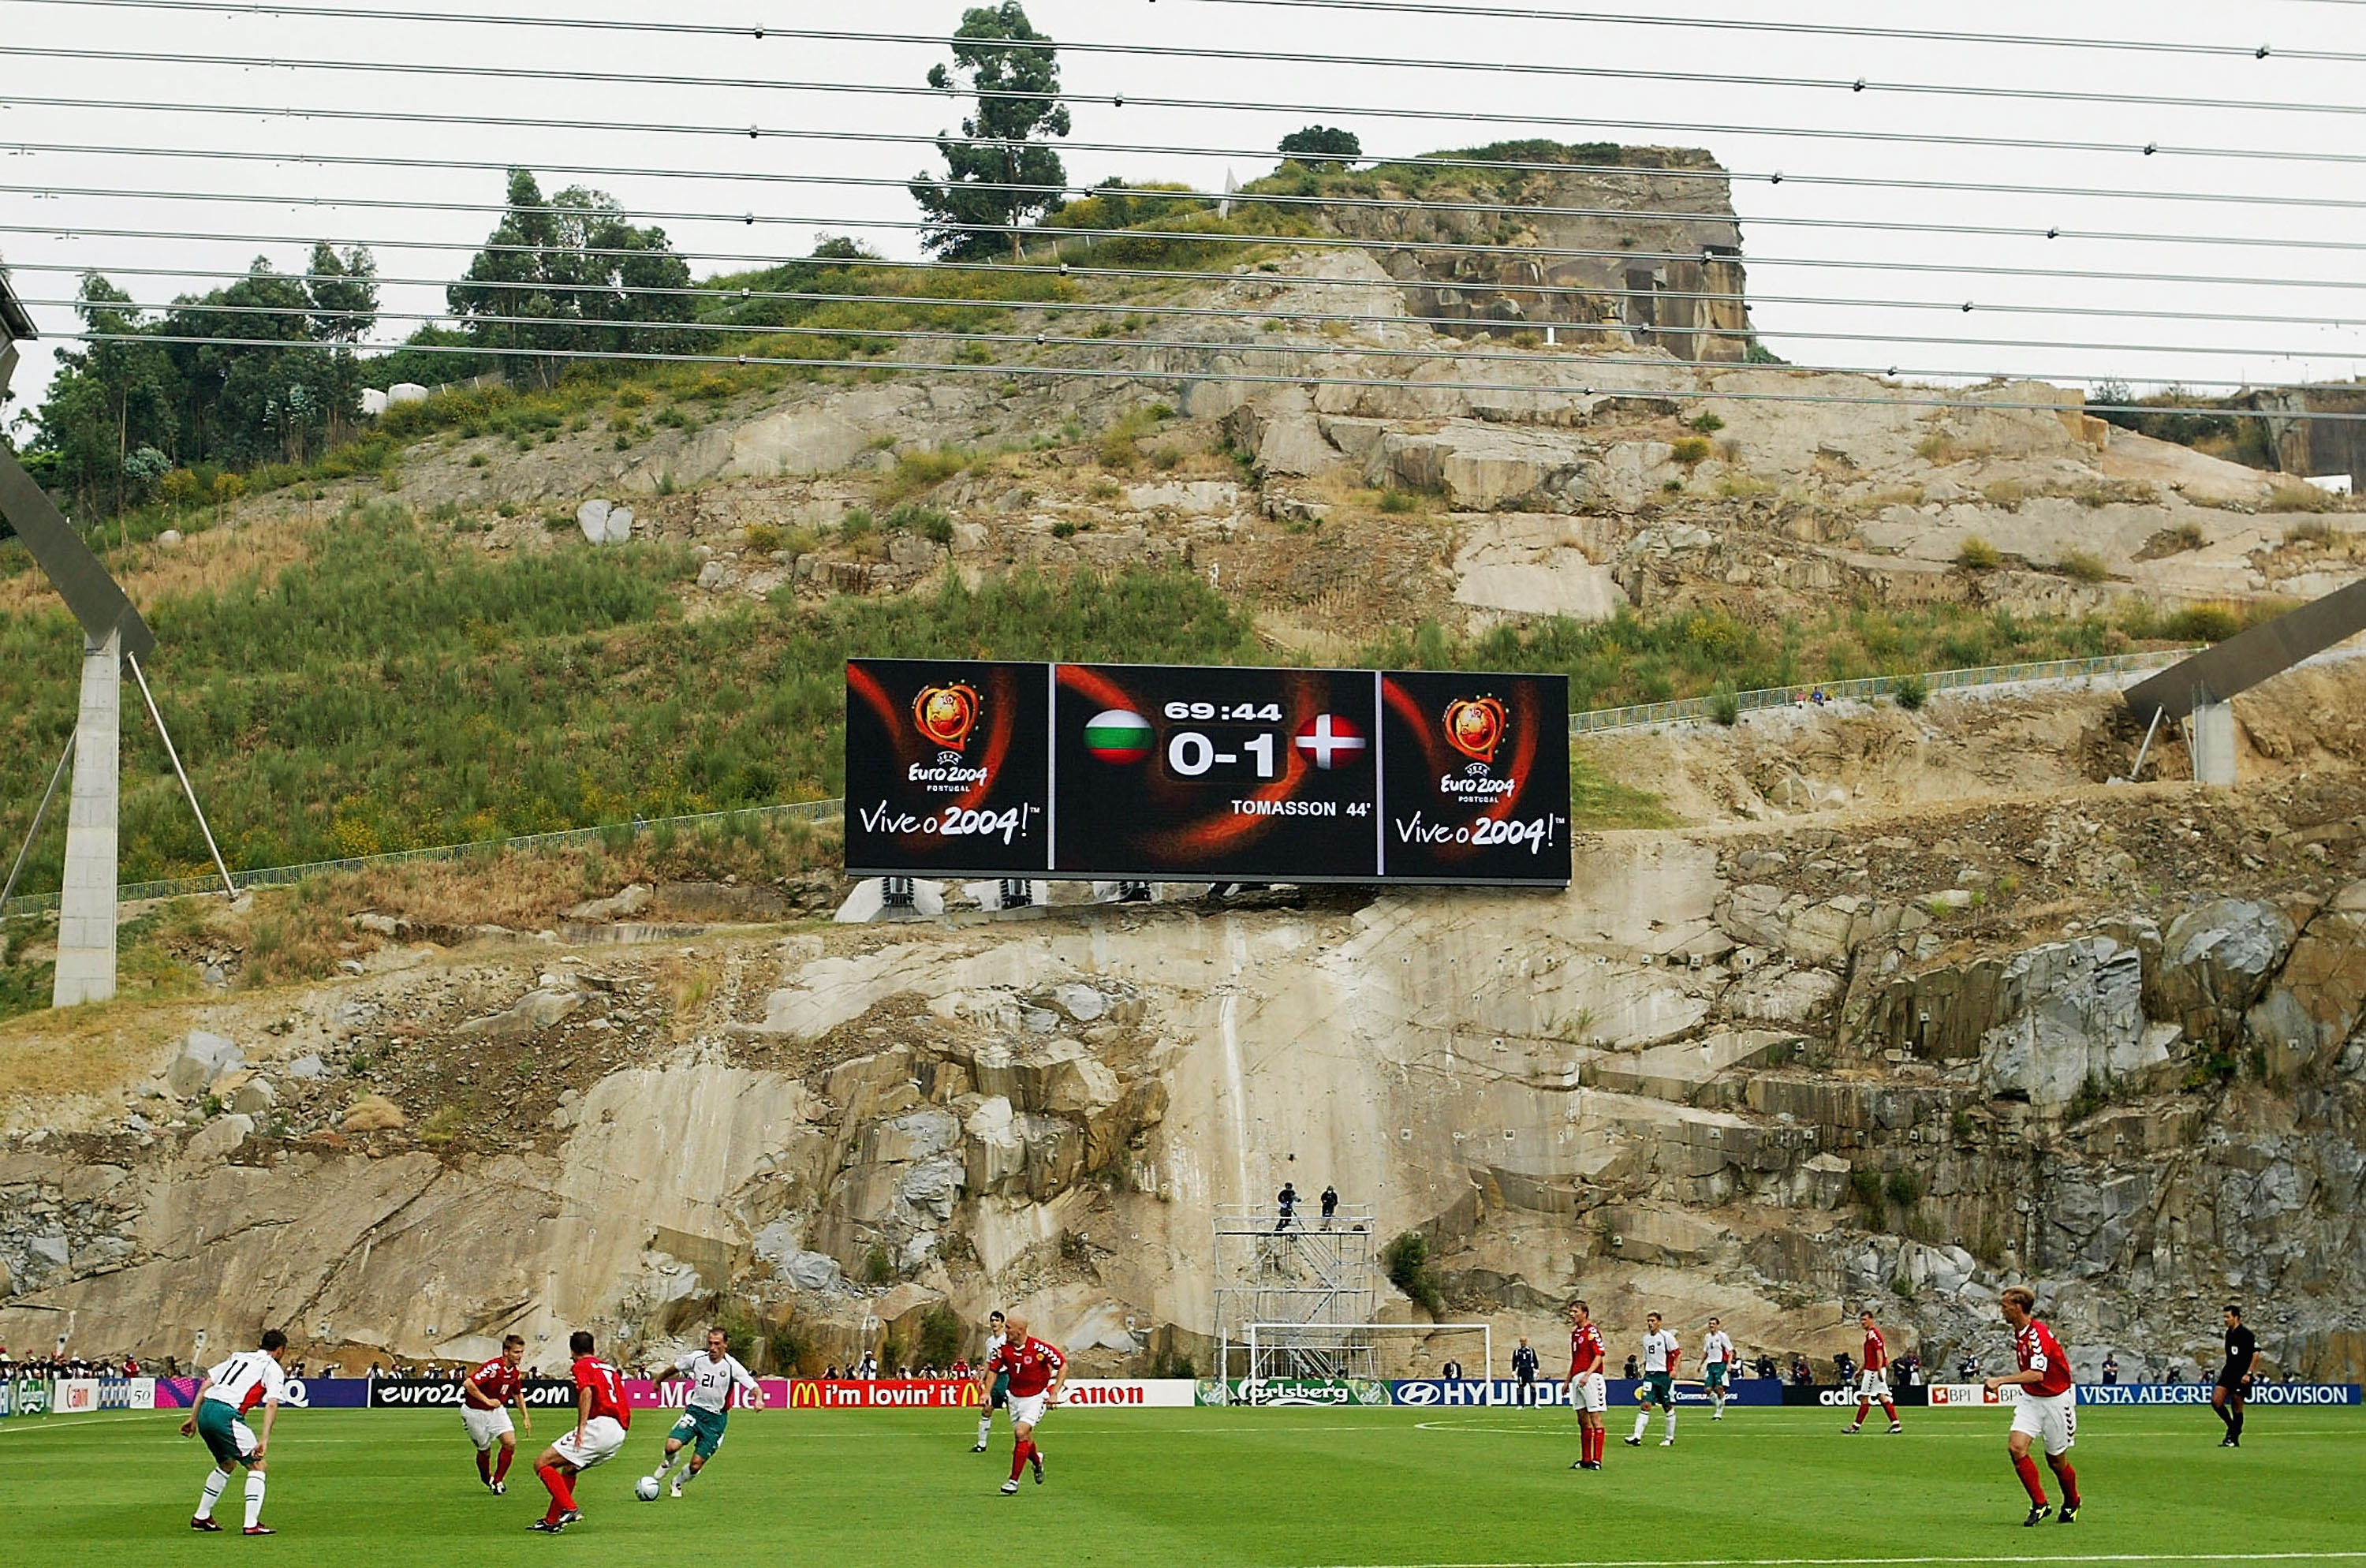 Auf dem Gelände von Braga fanden zwei Spiele der Euro 2004 statt